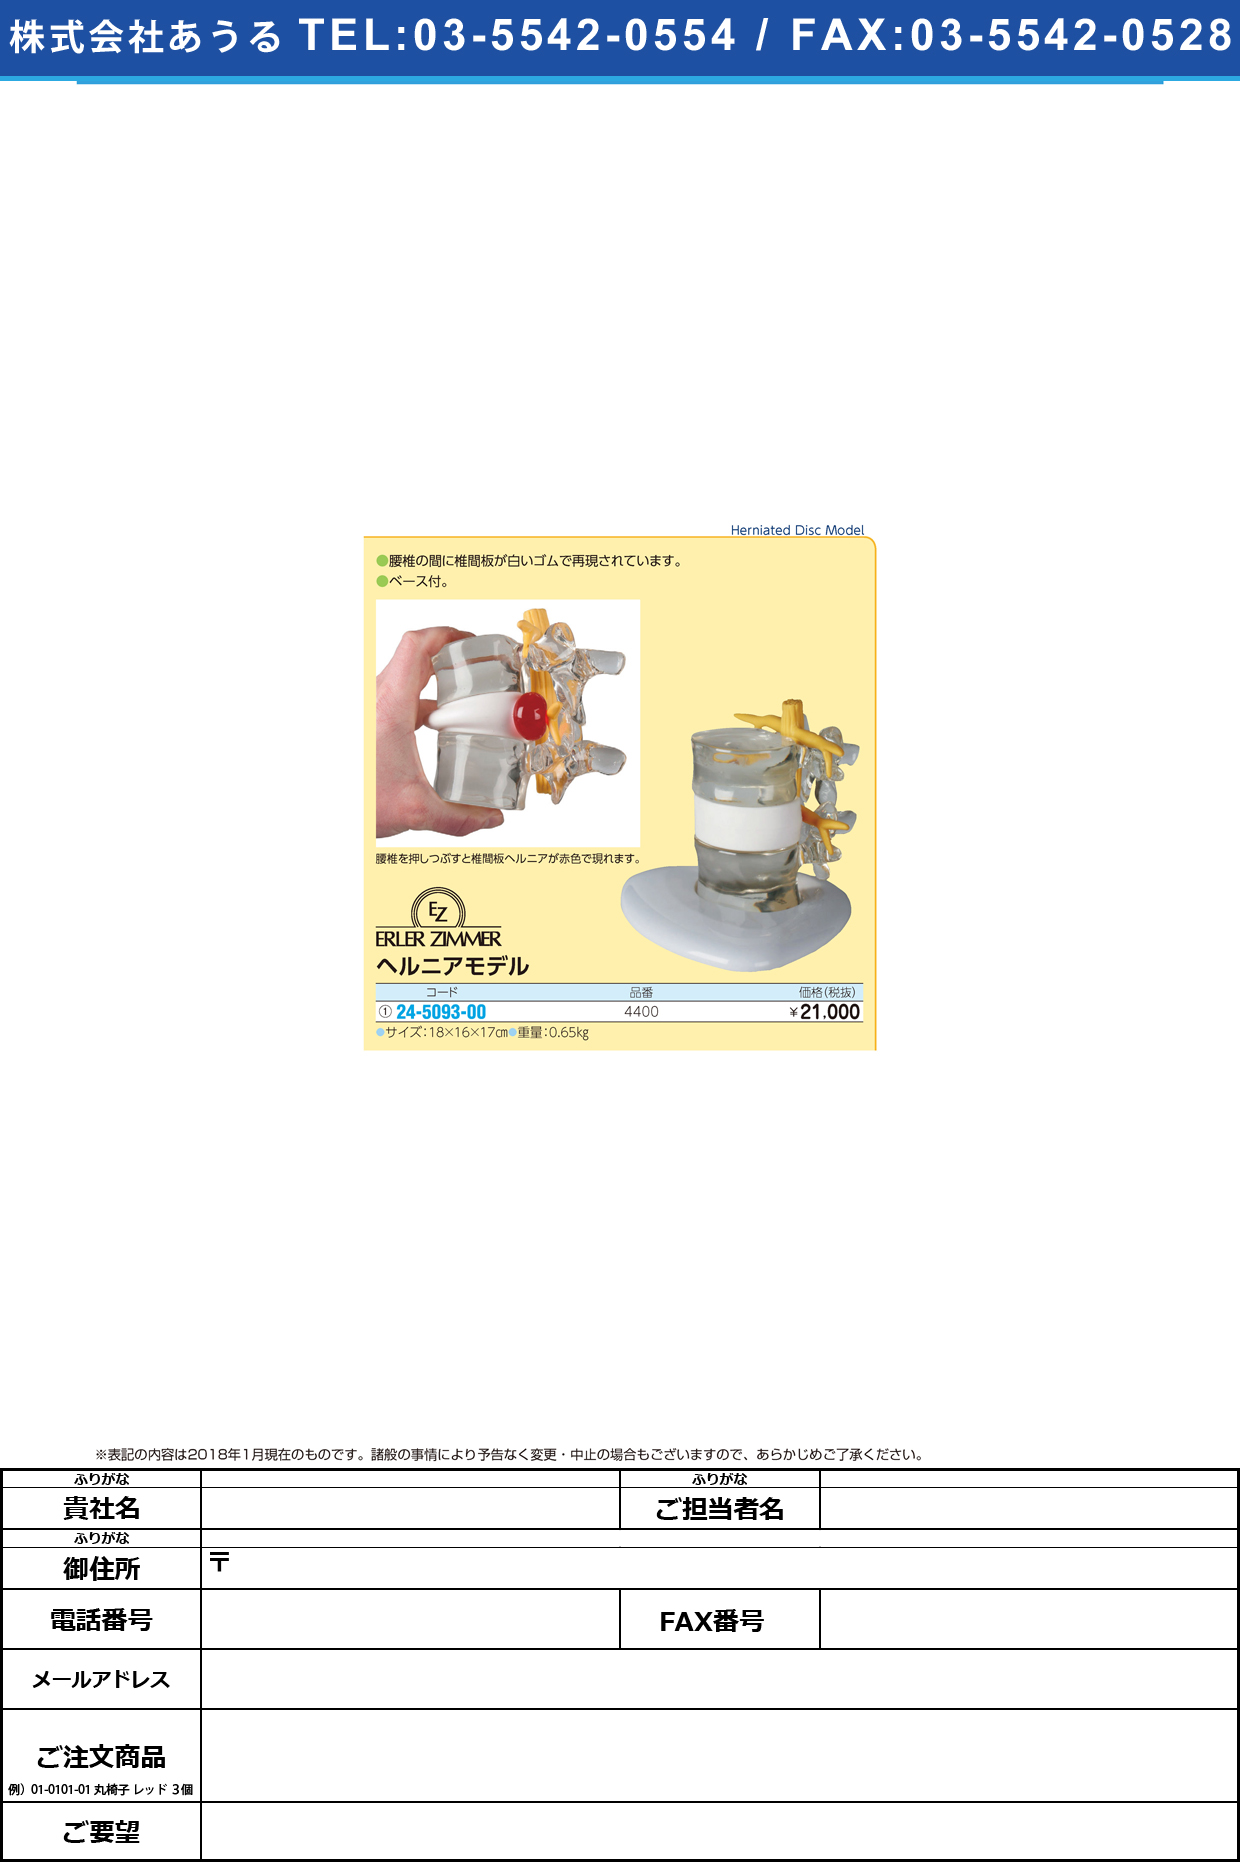 (24-5093-00)ヘルニアモデル 4400 ﾍﾙﾆｱﾓﾃﾞﾙ(エルラージーマー社)【1個単位】【2019年カタログ商品】